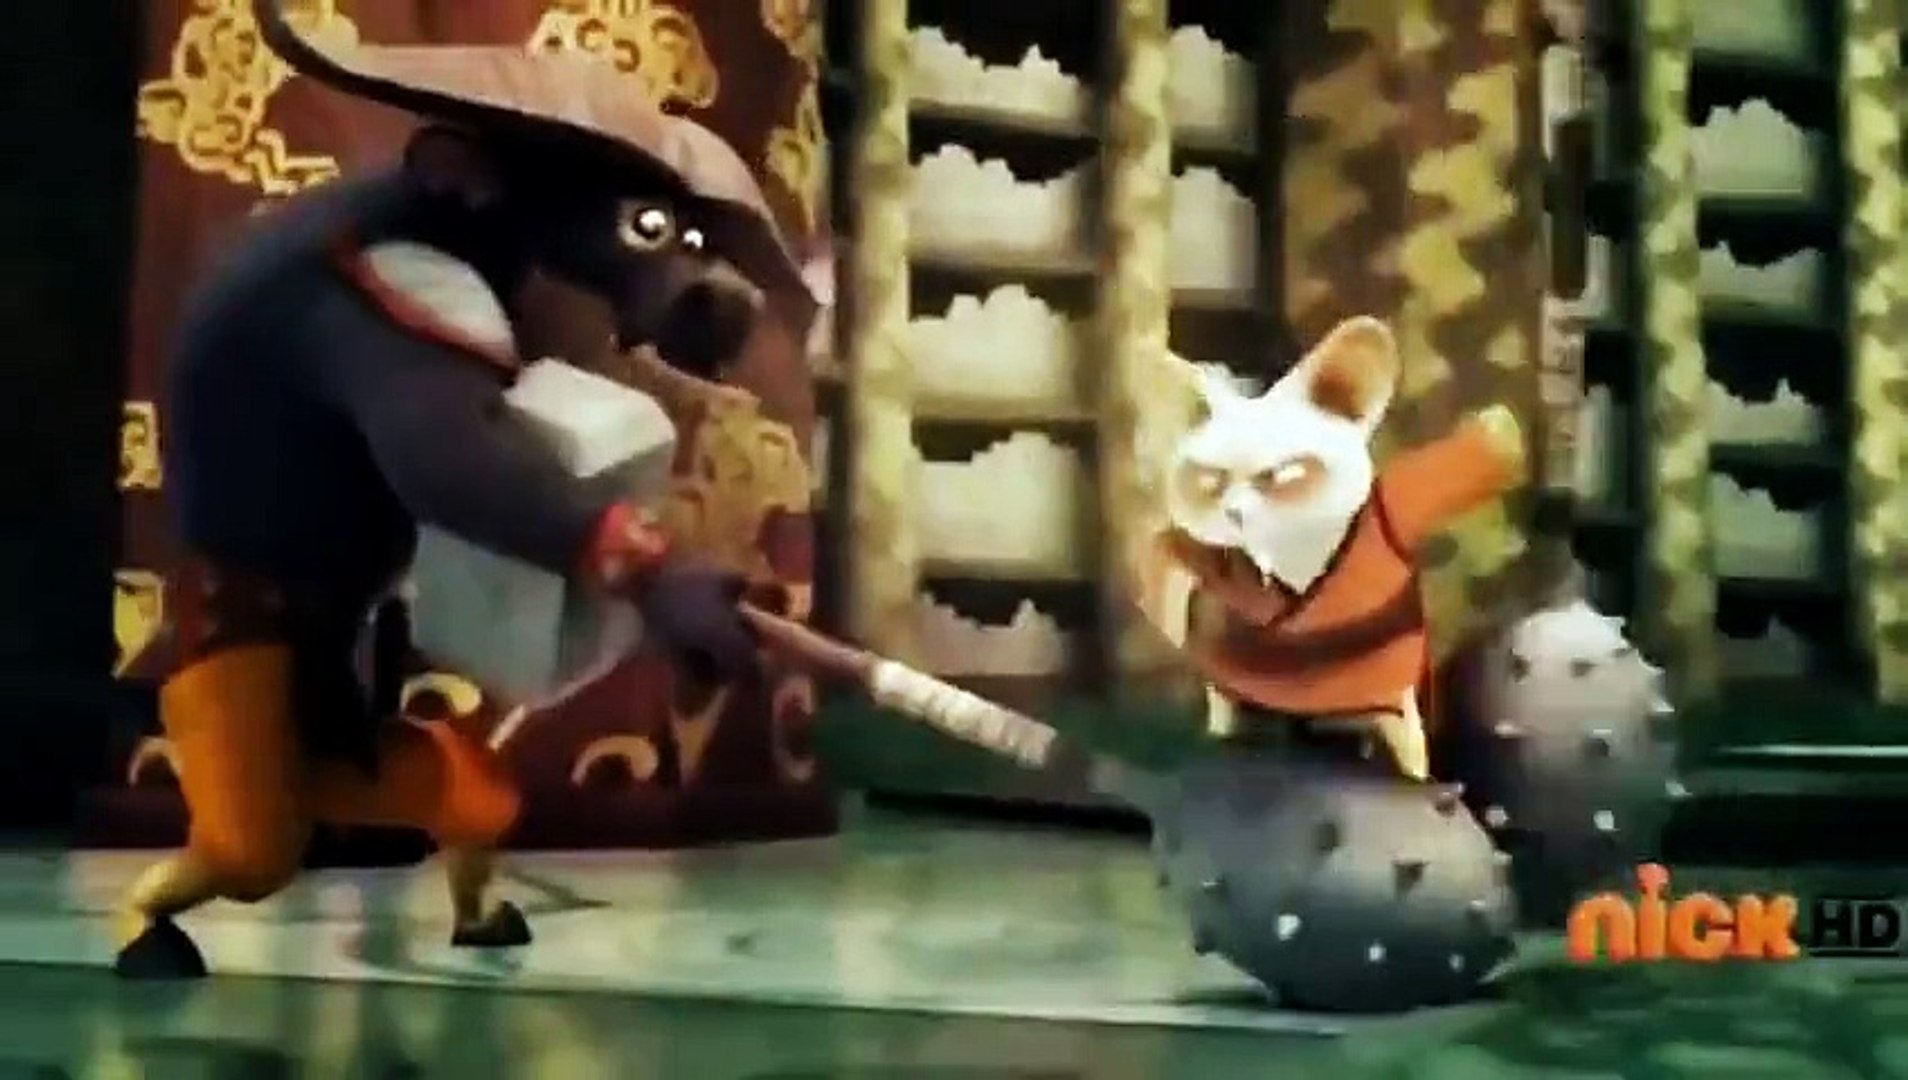 Hot Animated Movies 2015 Full movie - Kung Fu Panda 3 Movies - Cartoon Movies - Comedy Movies_Part2